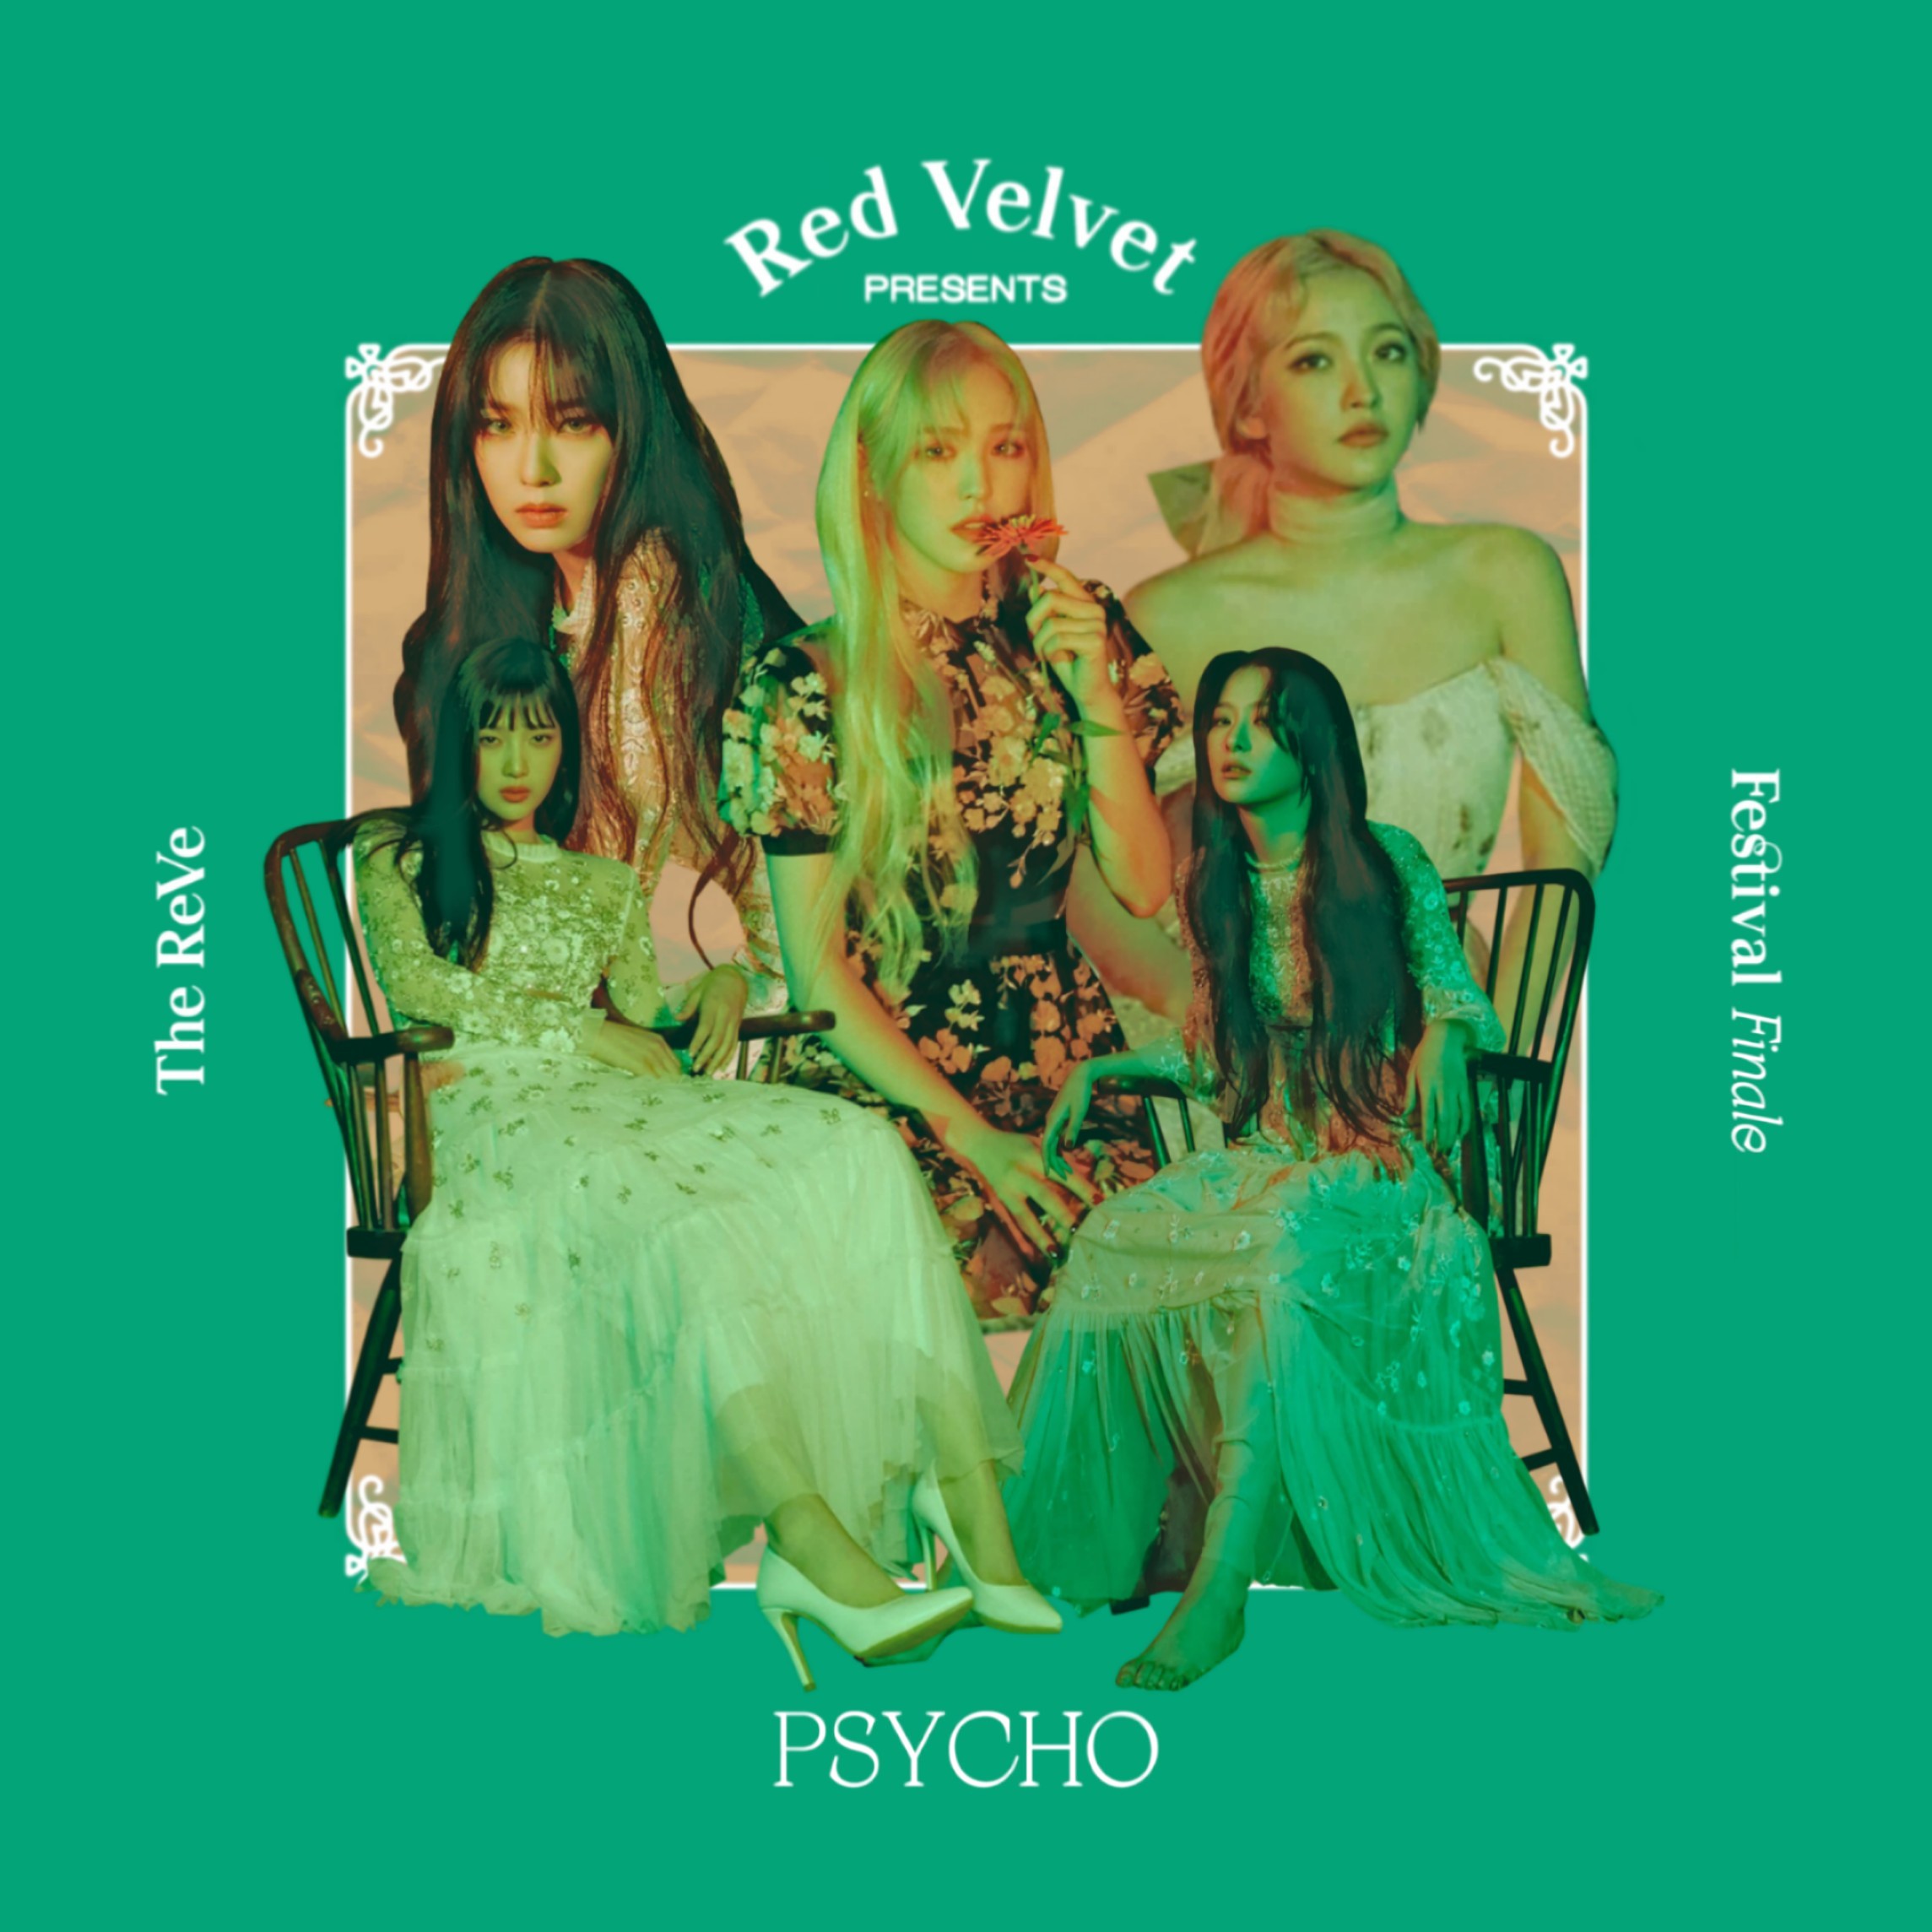 RED VELVET PSYCHO / THE REVE FESTIVAL FINALE cover by LEAlbum on ...